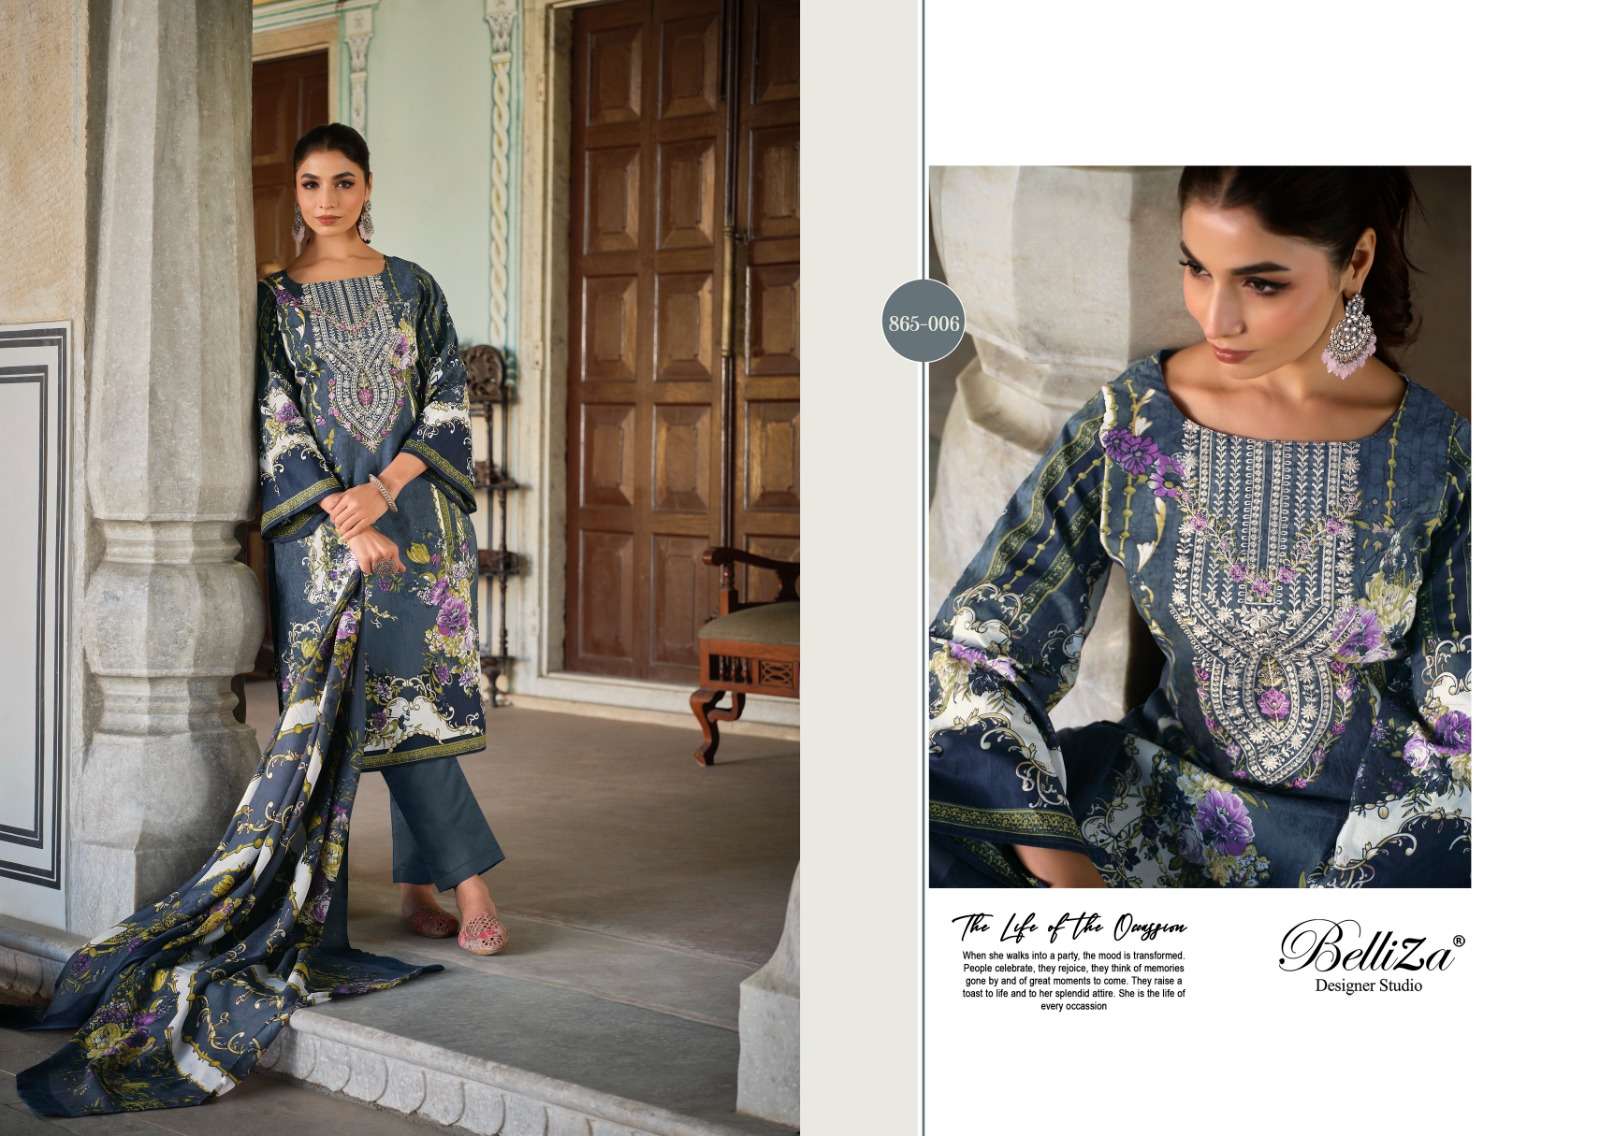 Belliza Naira Vol 28 Dress Material Wholesale catalog